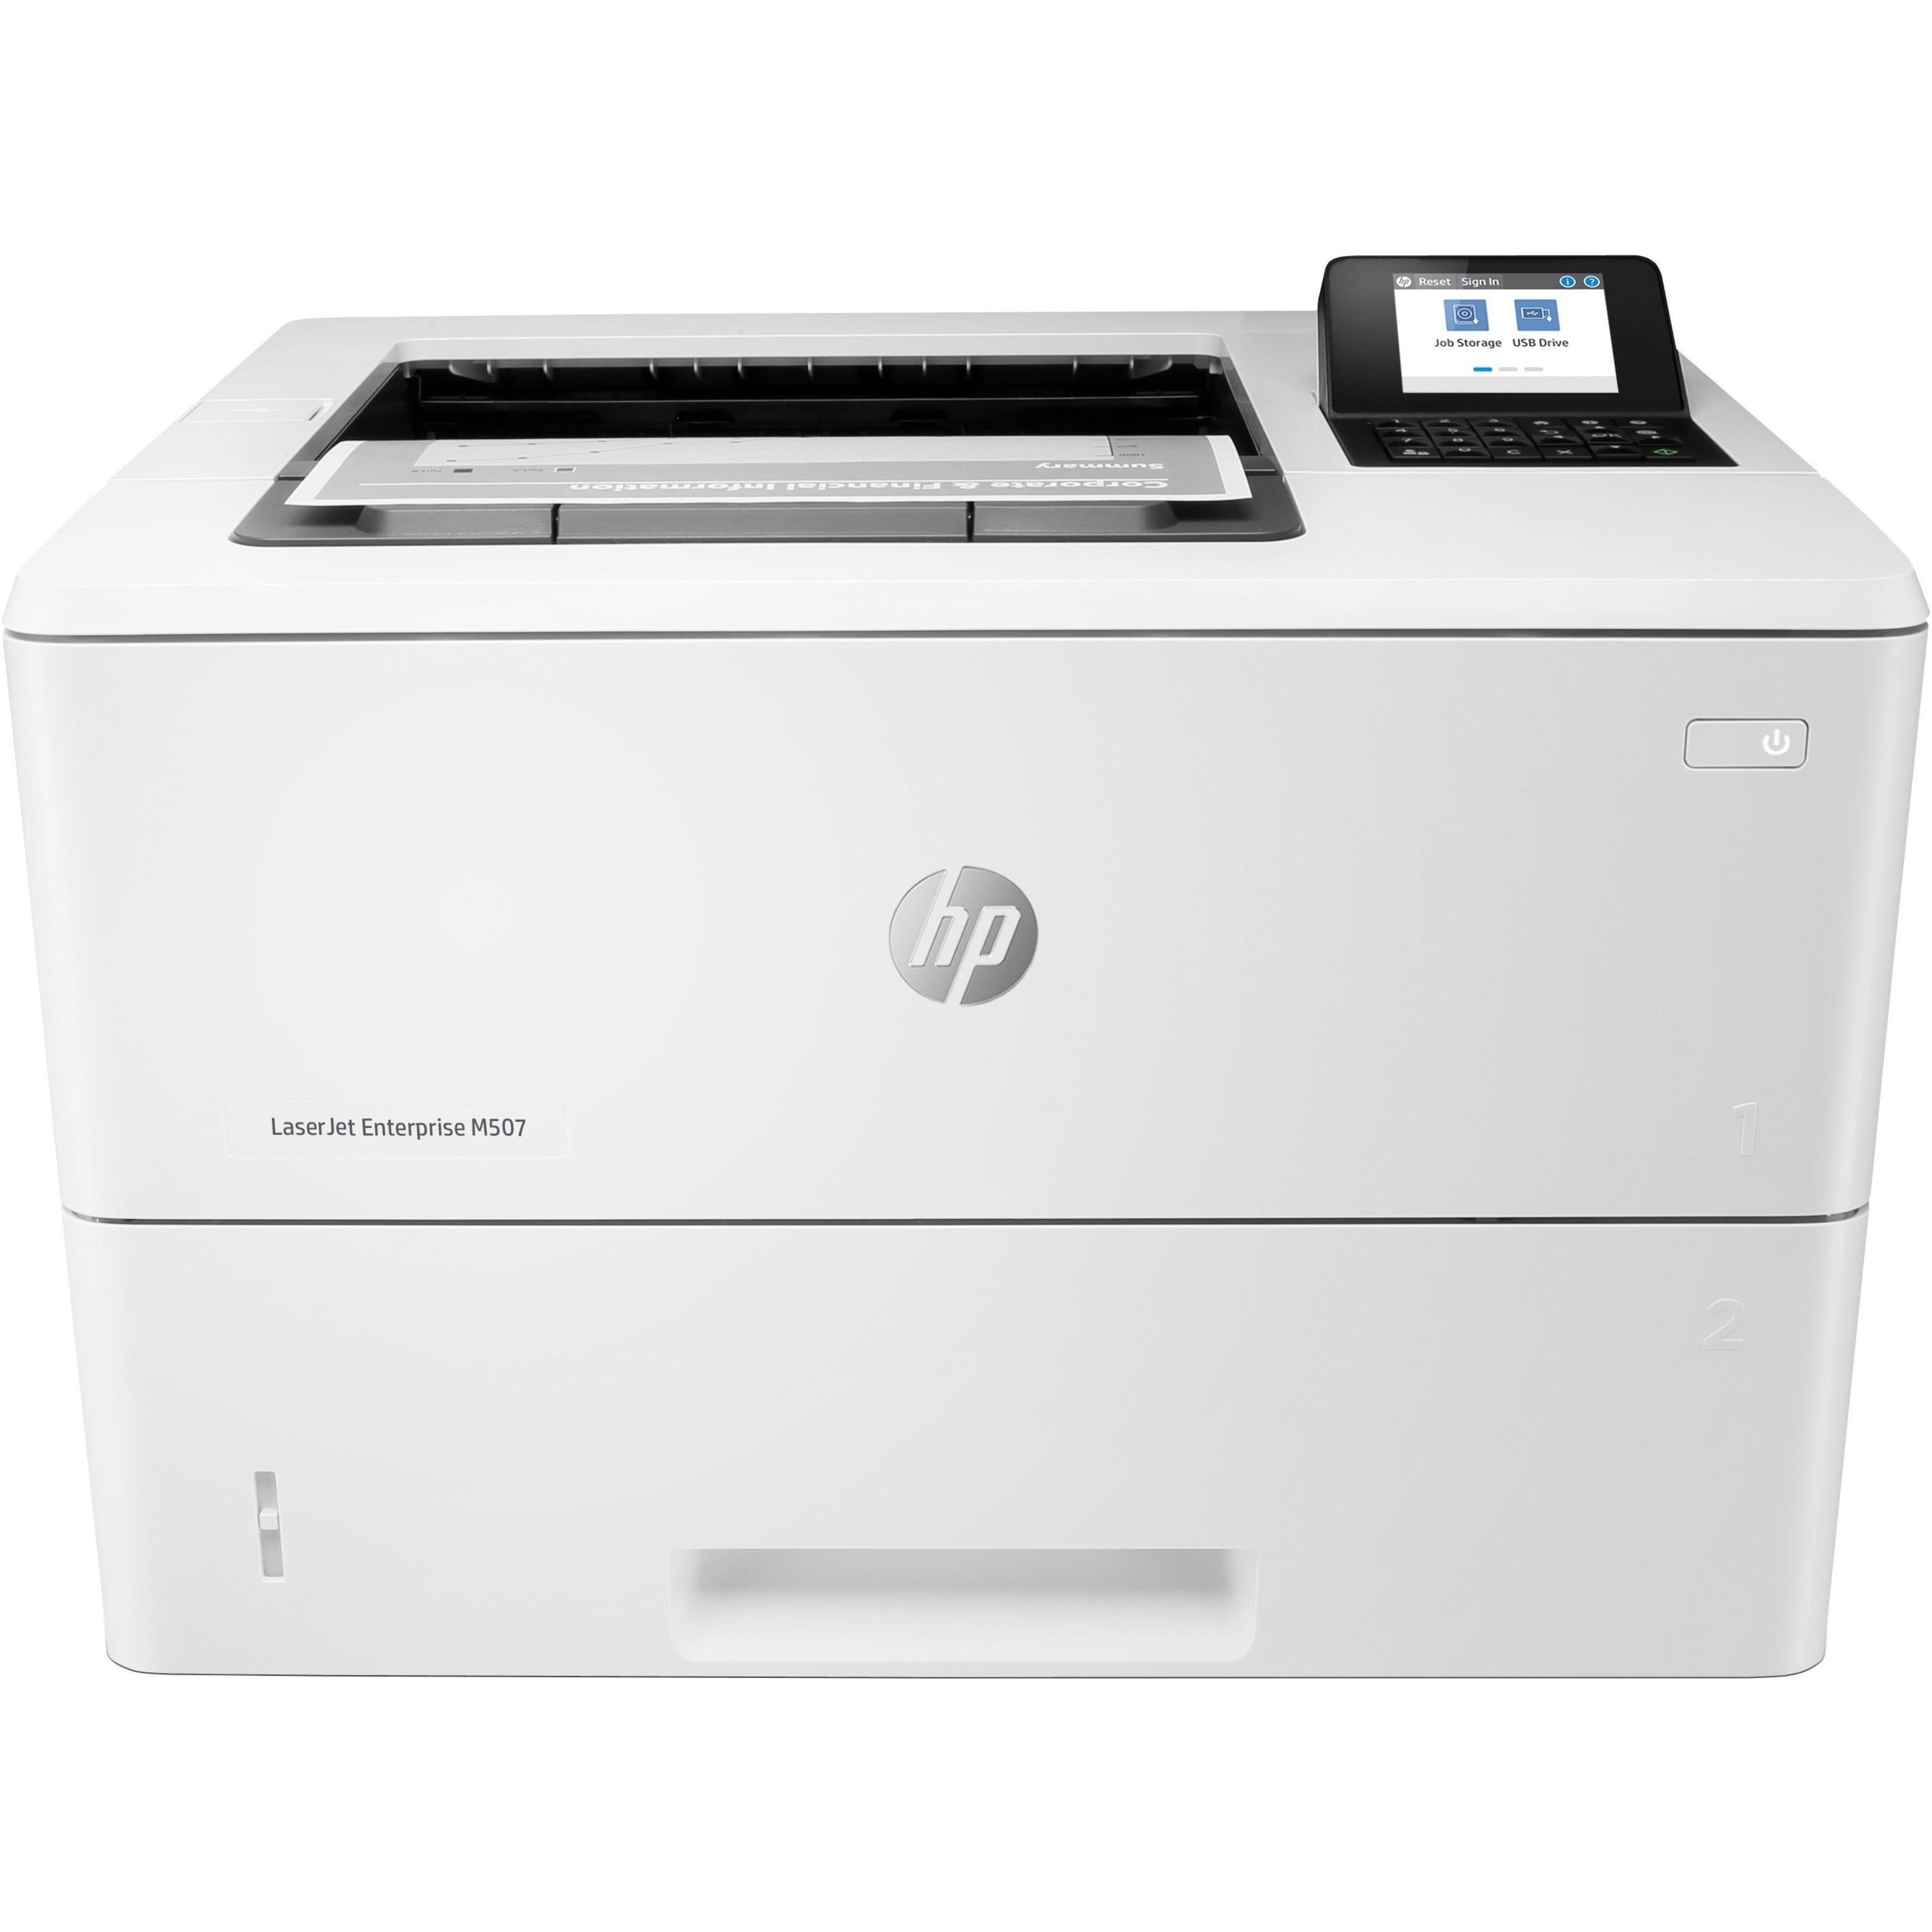 HP 1PV87A#BGJ LaserJet Enterprise M507dn Desktop Laser Printer - Monochrome, 45 ppm, Automatic Duplex Printing, 1200 x 1200 dpi